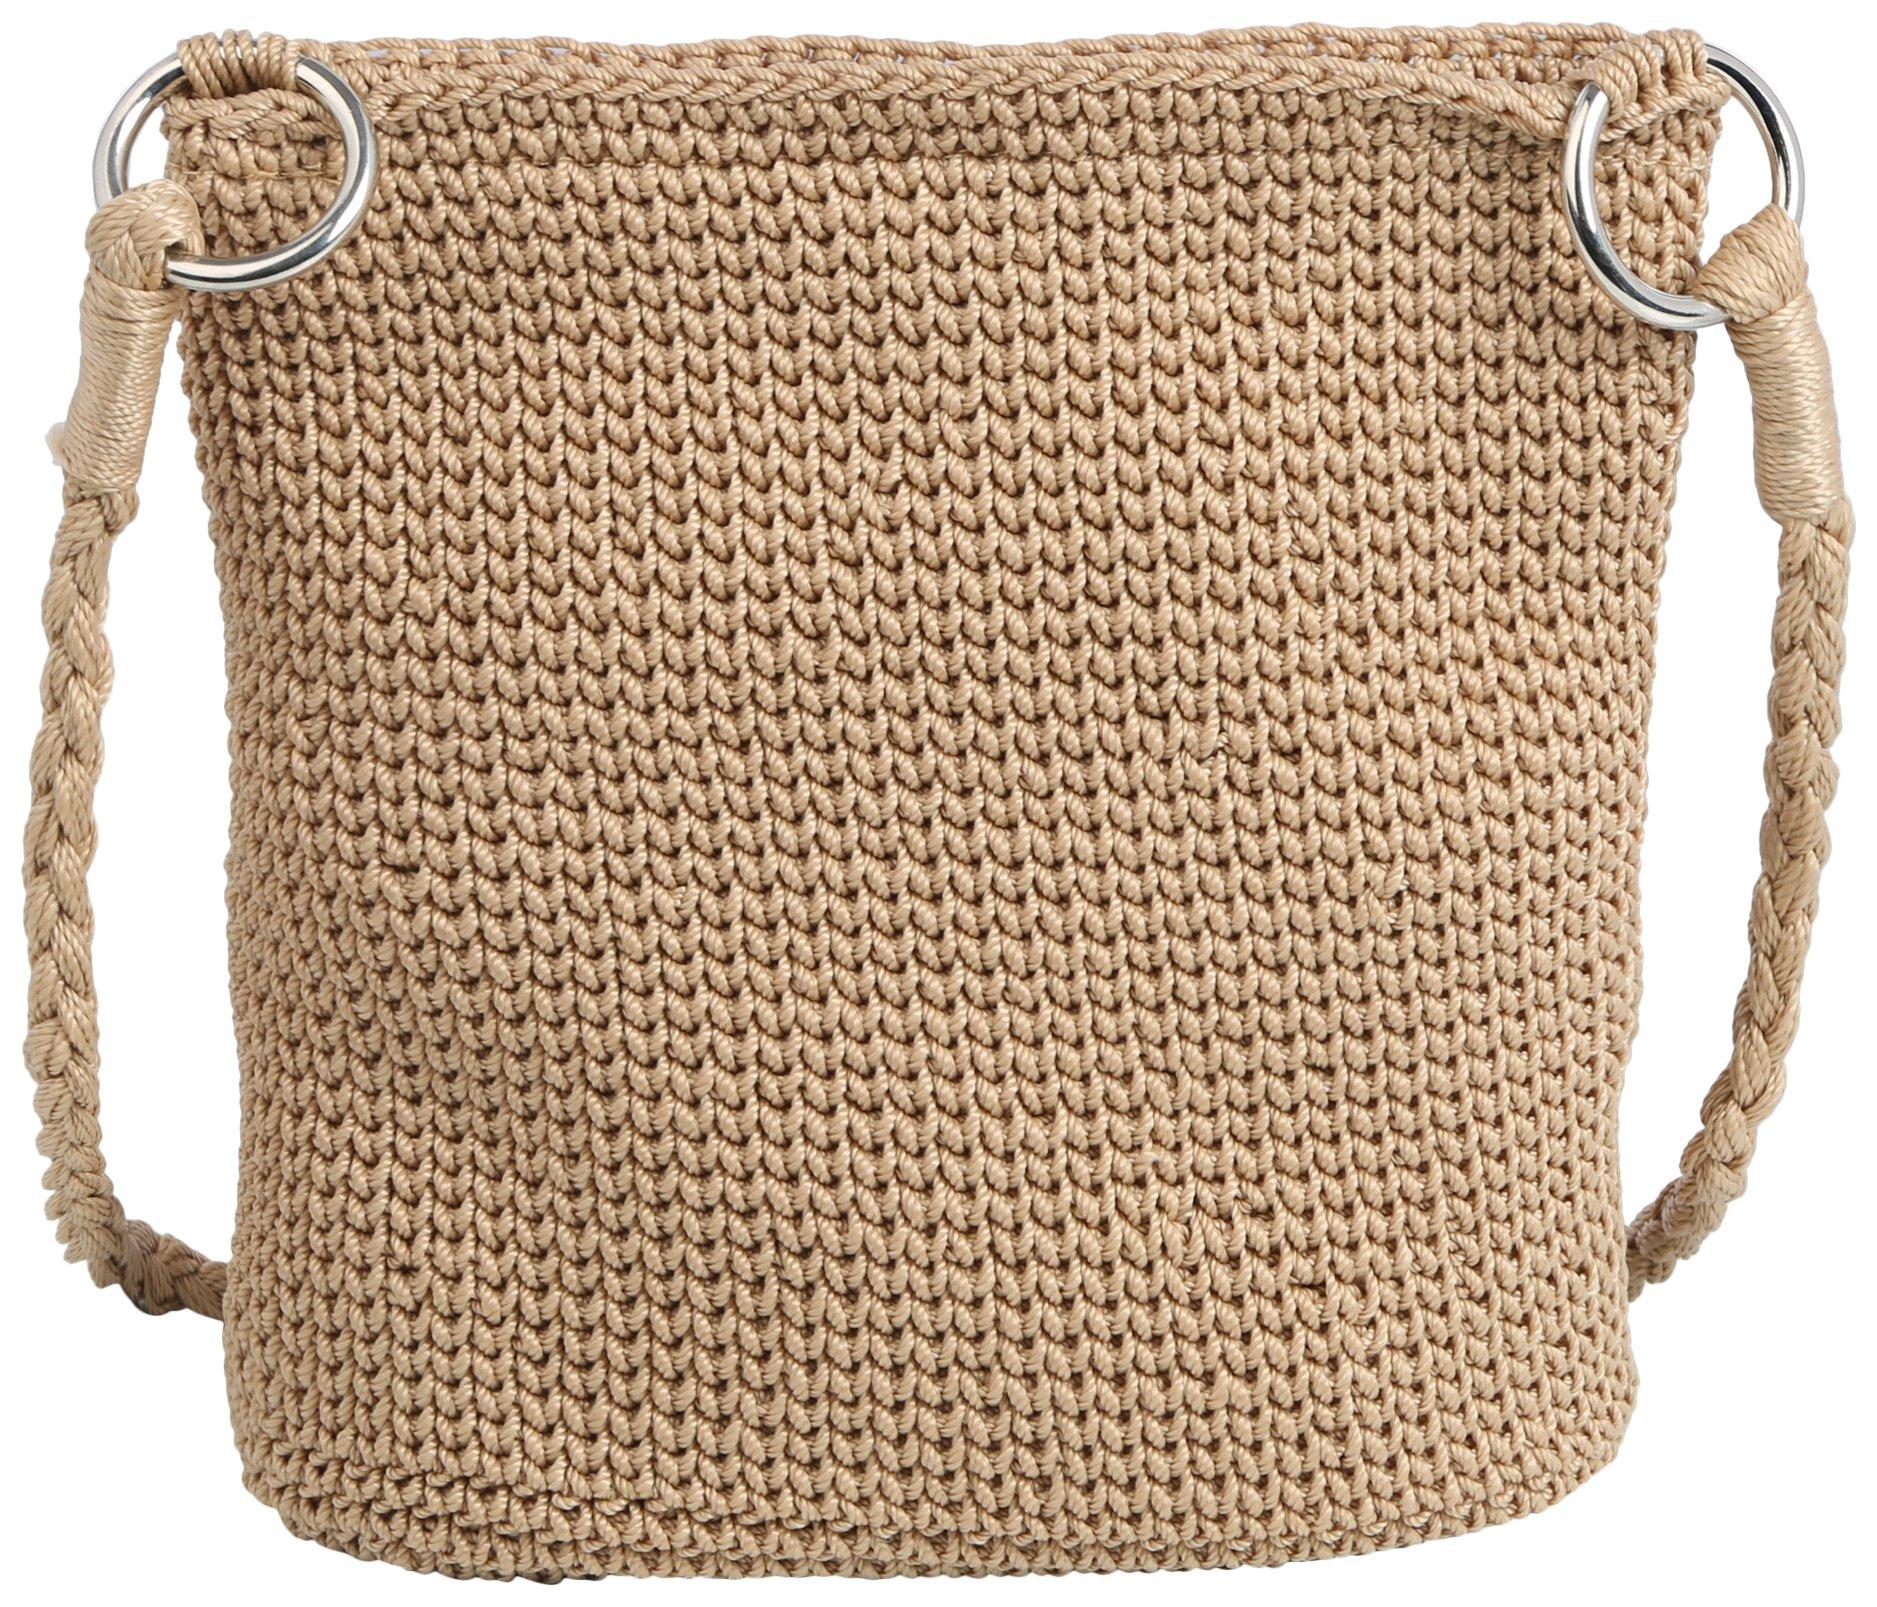 Daytrip Crochet Solid Crossbody Bag